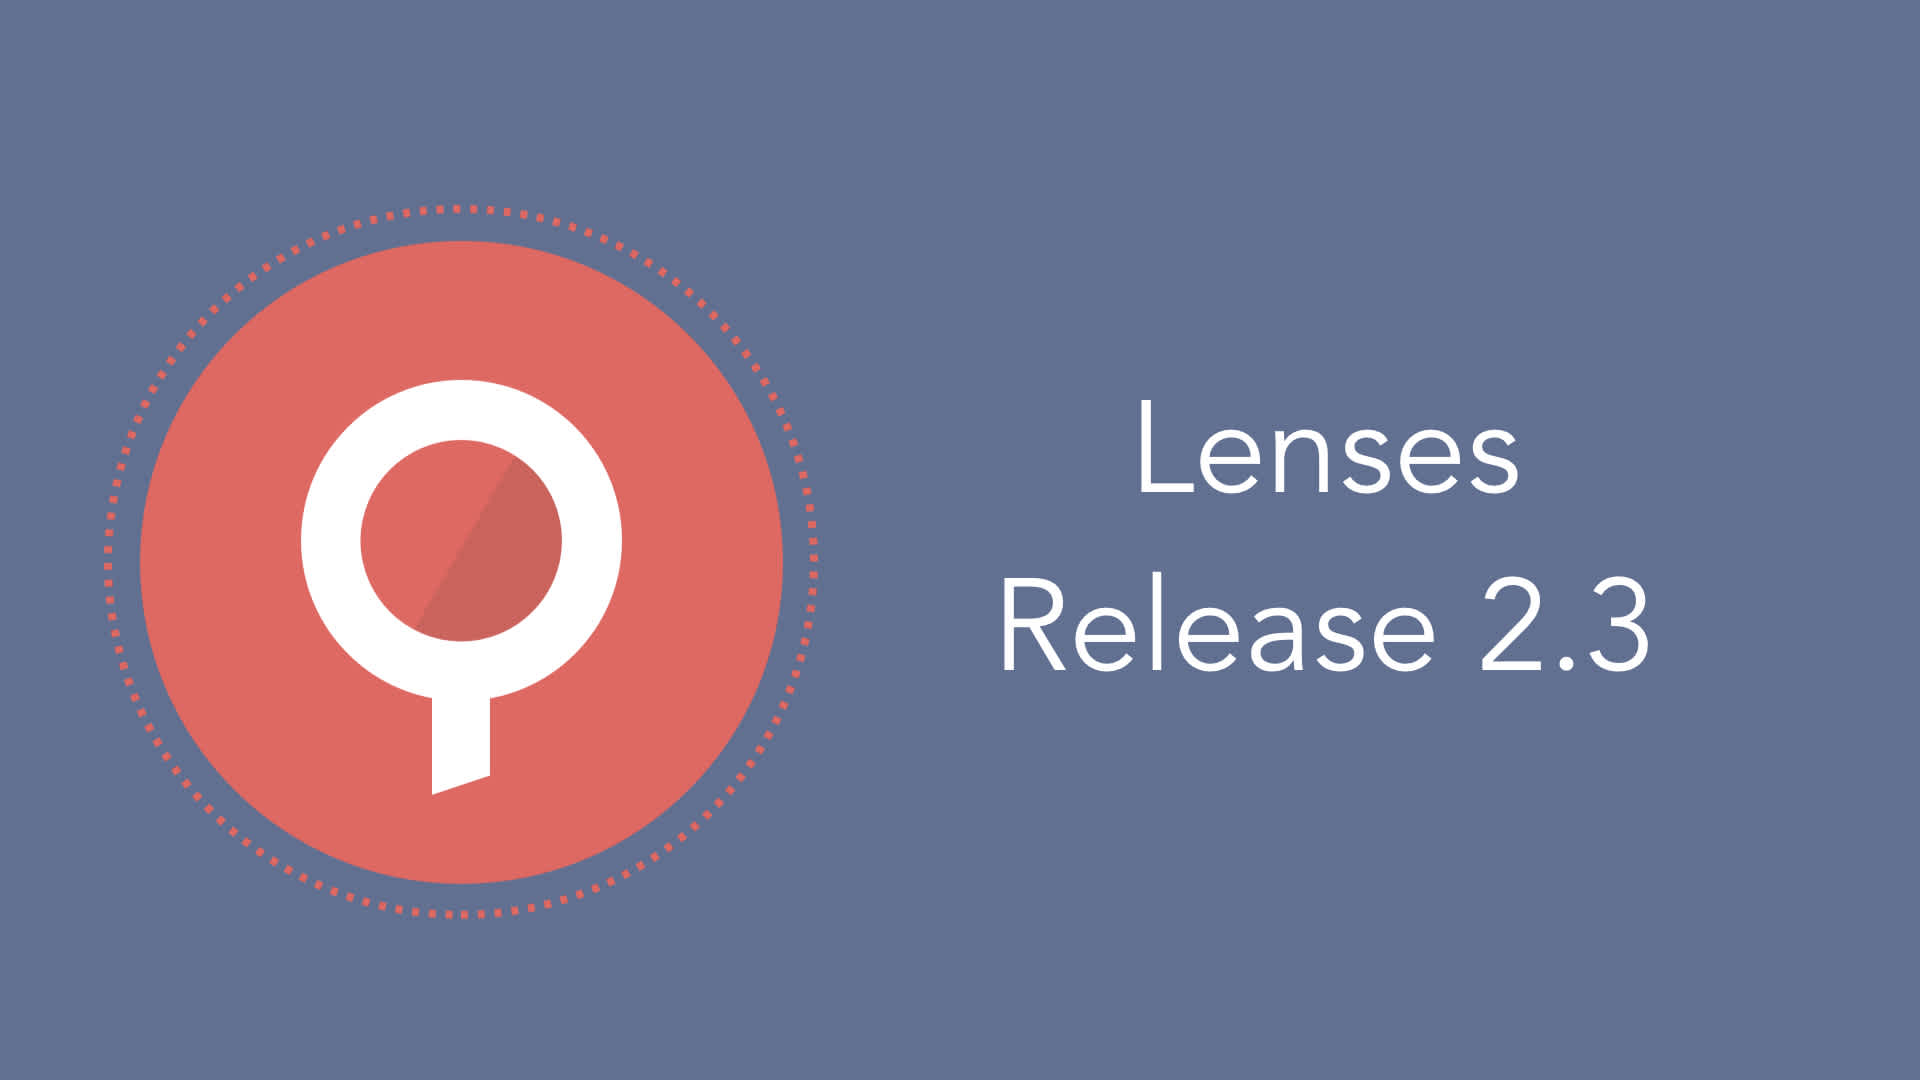 Lenses 2.3 Release